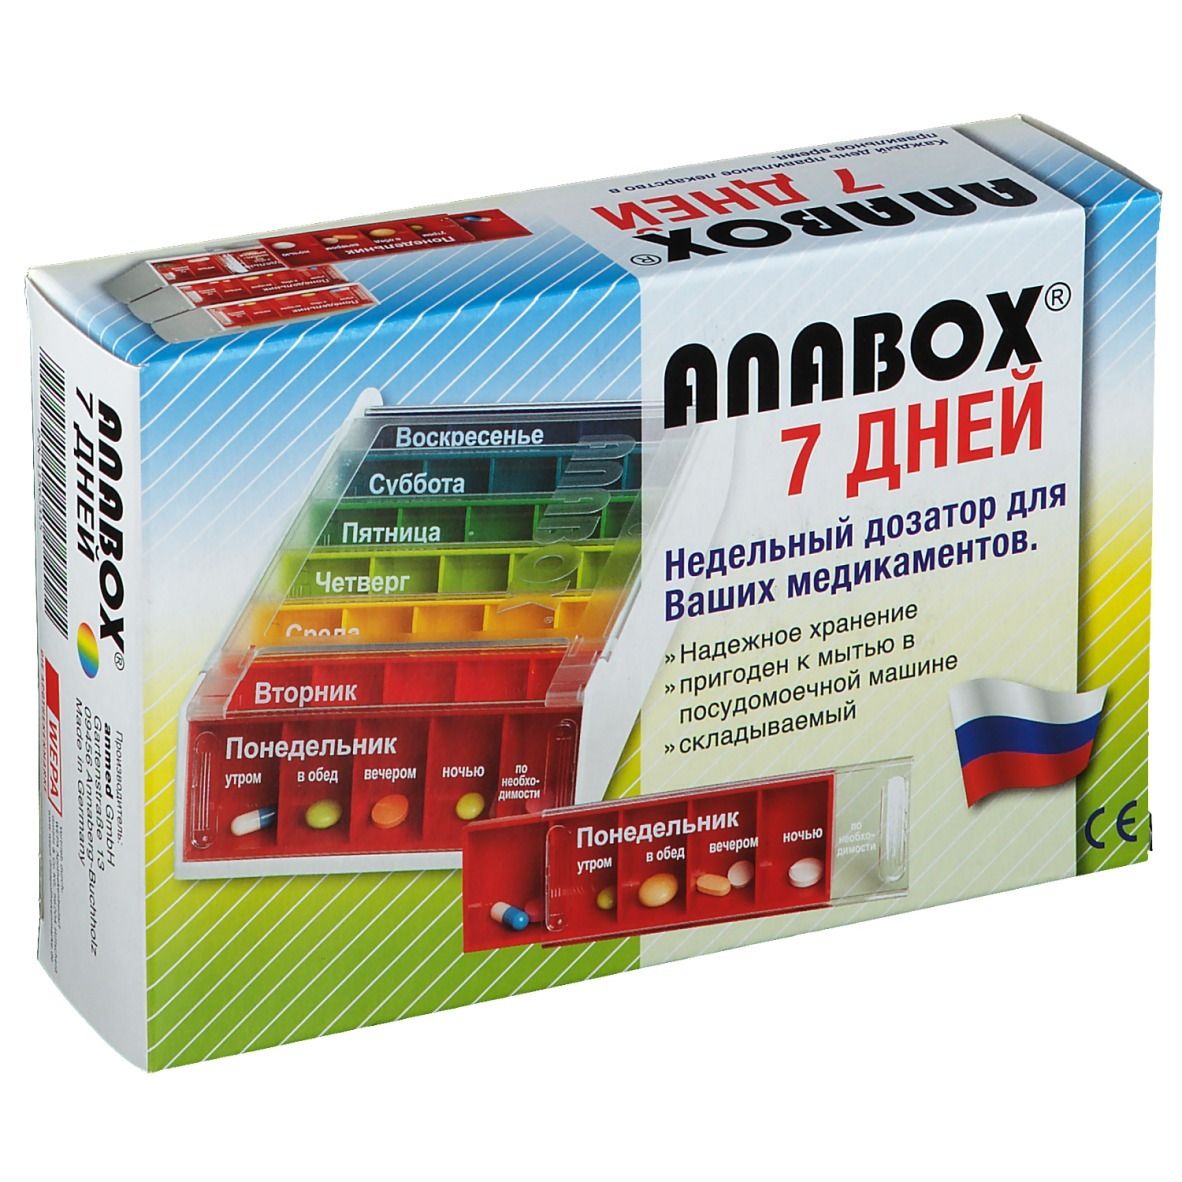 ANABOX® 7 Tage Regenbogen russisch